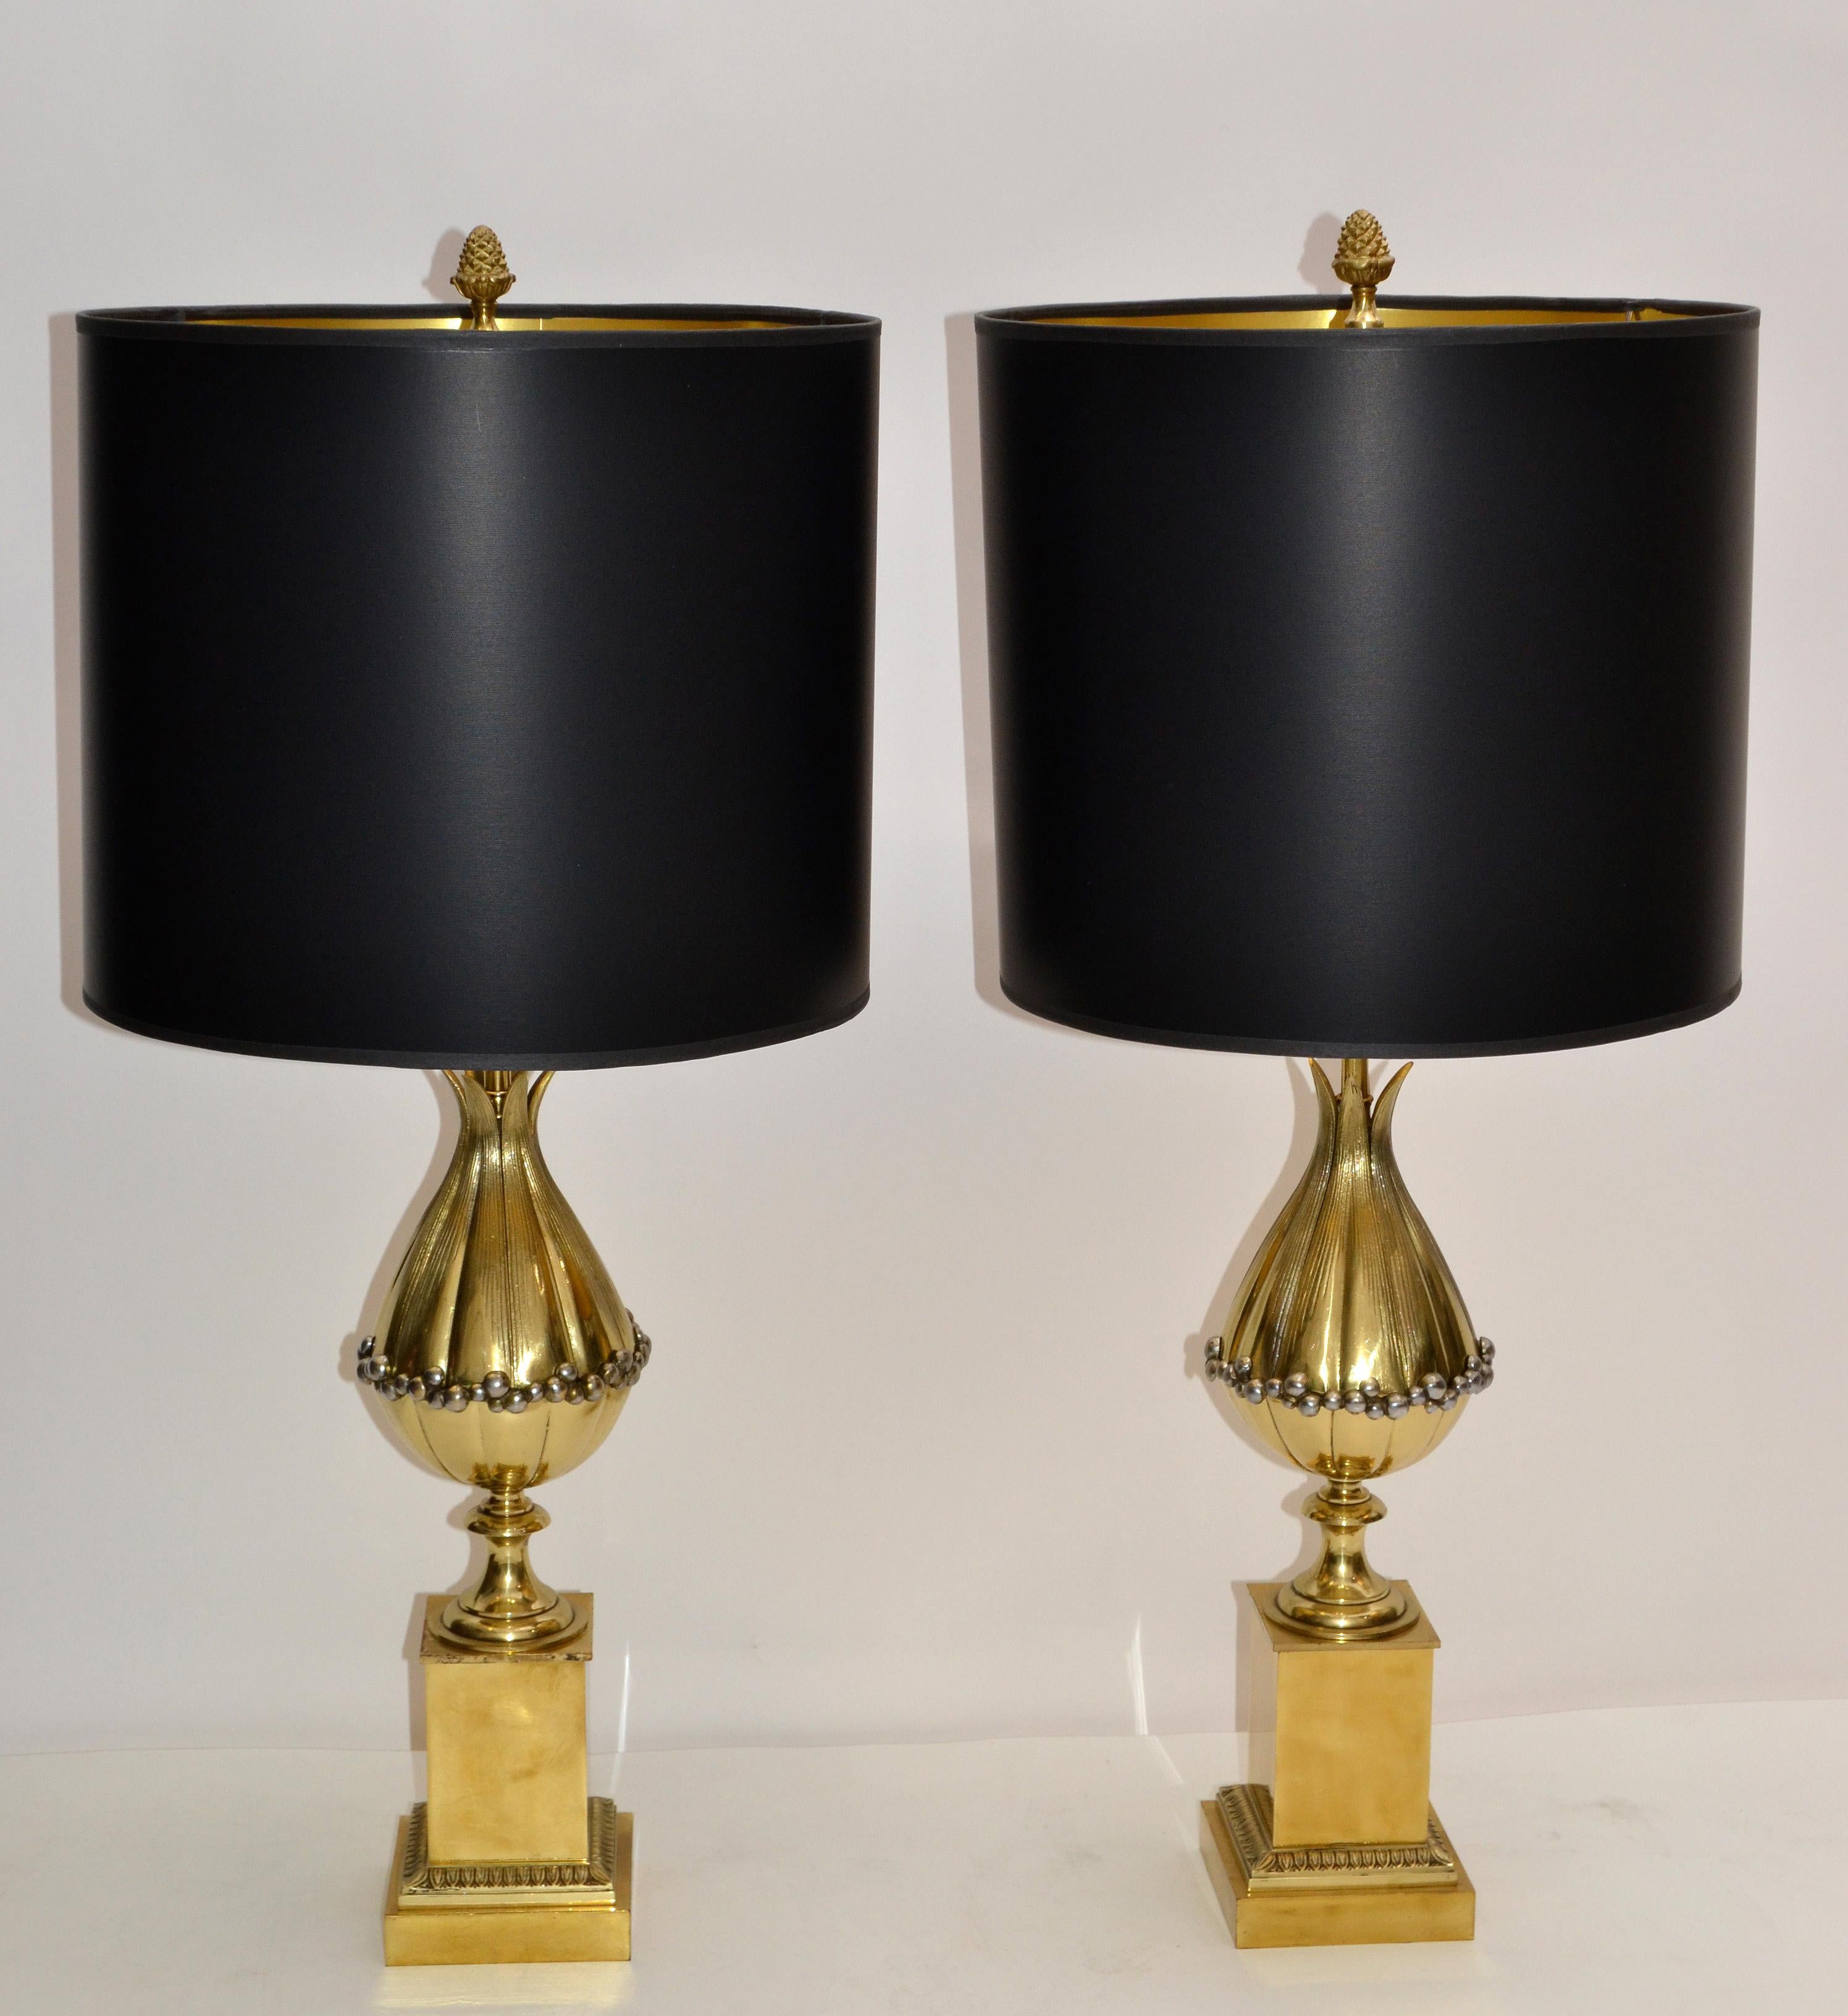 Superbe paire de lampes de table Lotus Art Déco de la Maison Charles en bronze avec abat-jour en papier noir et or.
Chaque lampe est équipée de deux ampoules de 40 watts maximum, les LED fonctionnent également.
Mesure :
La base fait 4,5 pouces